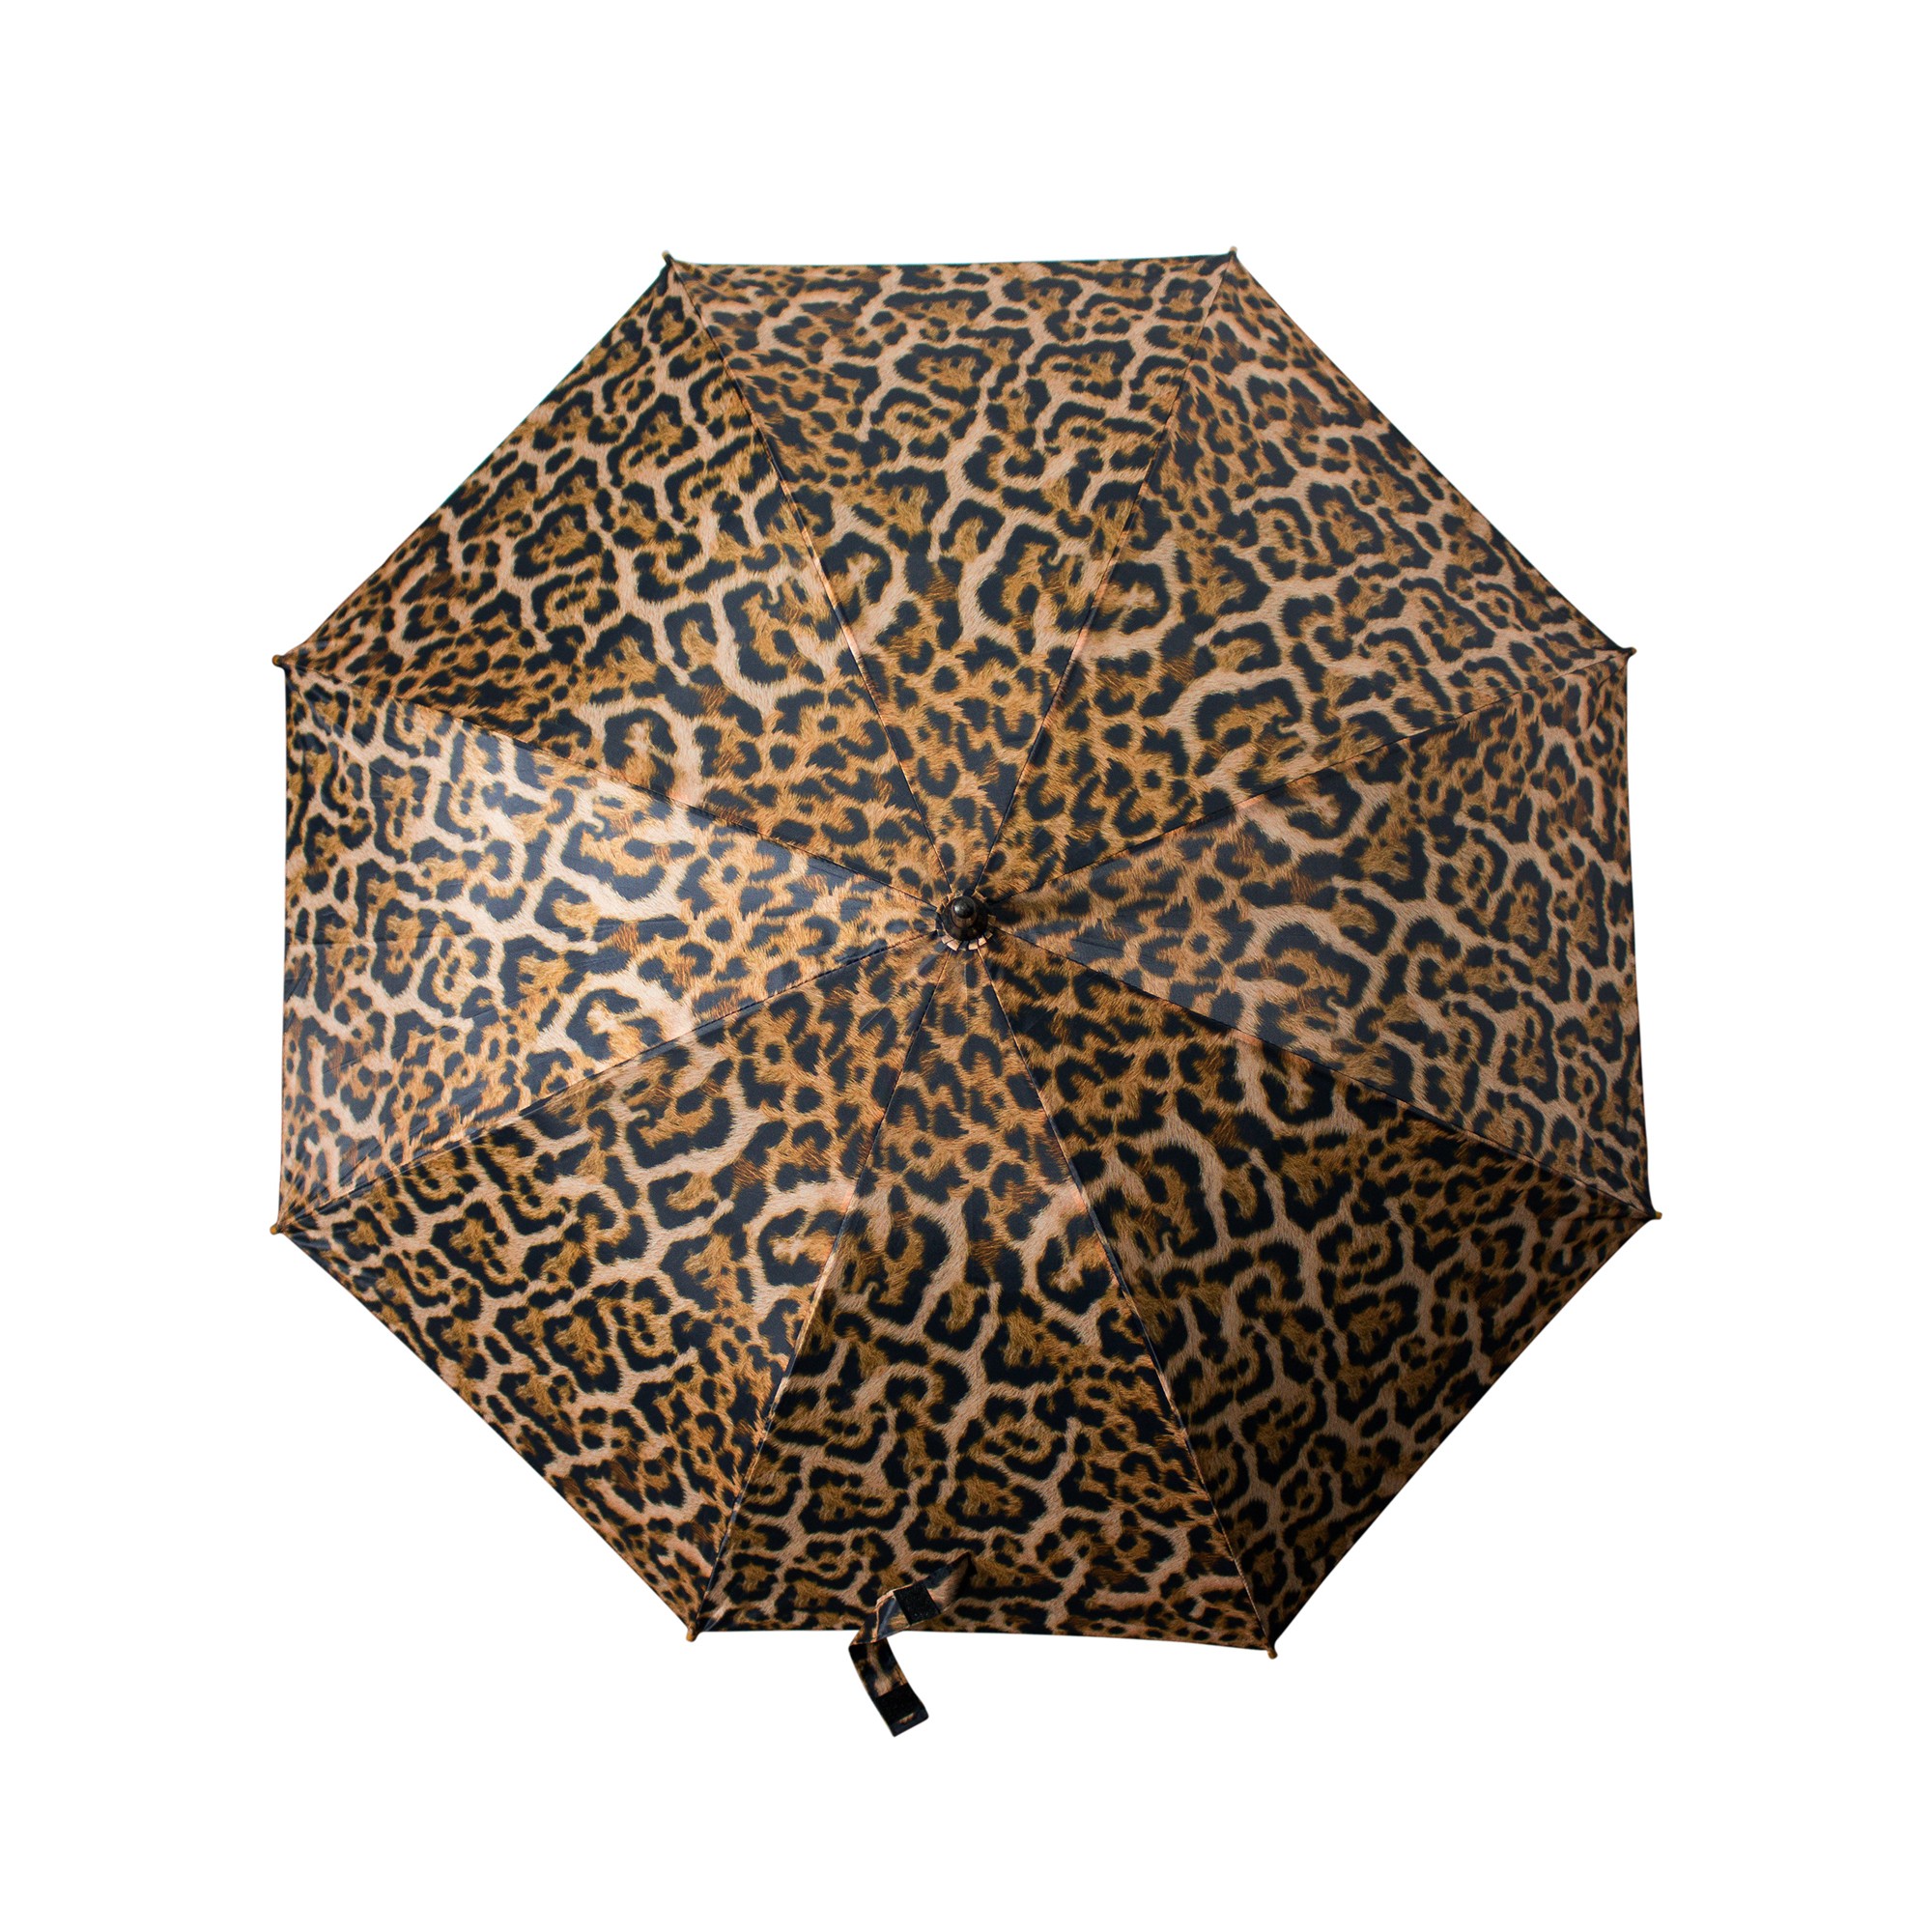 Leopardí deštník - 105*105*88cm Mars & More